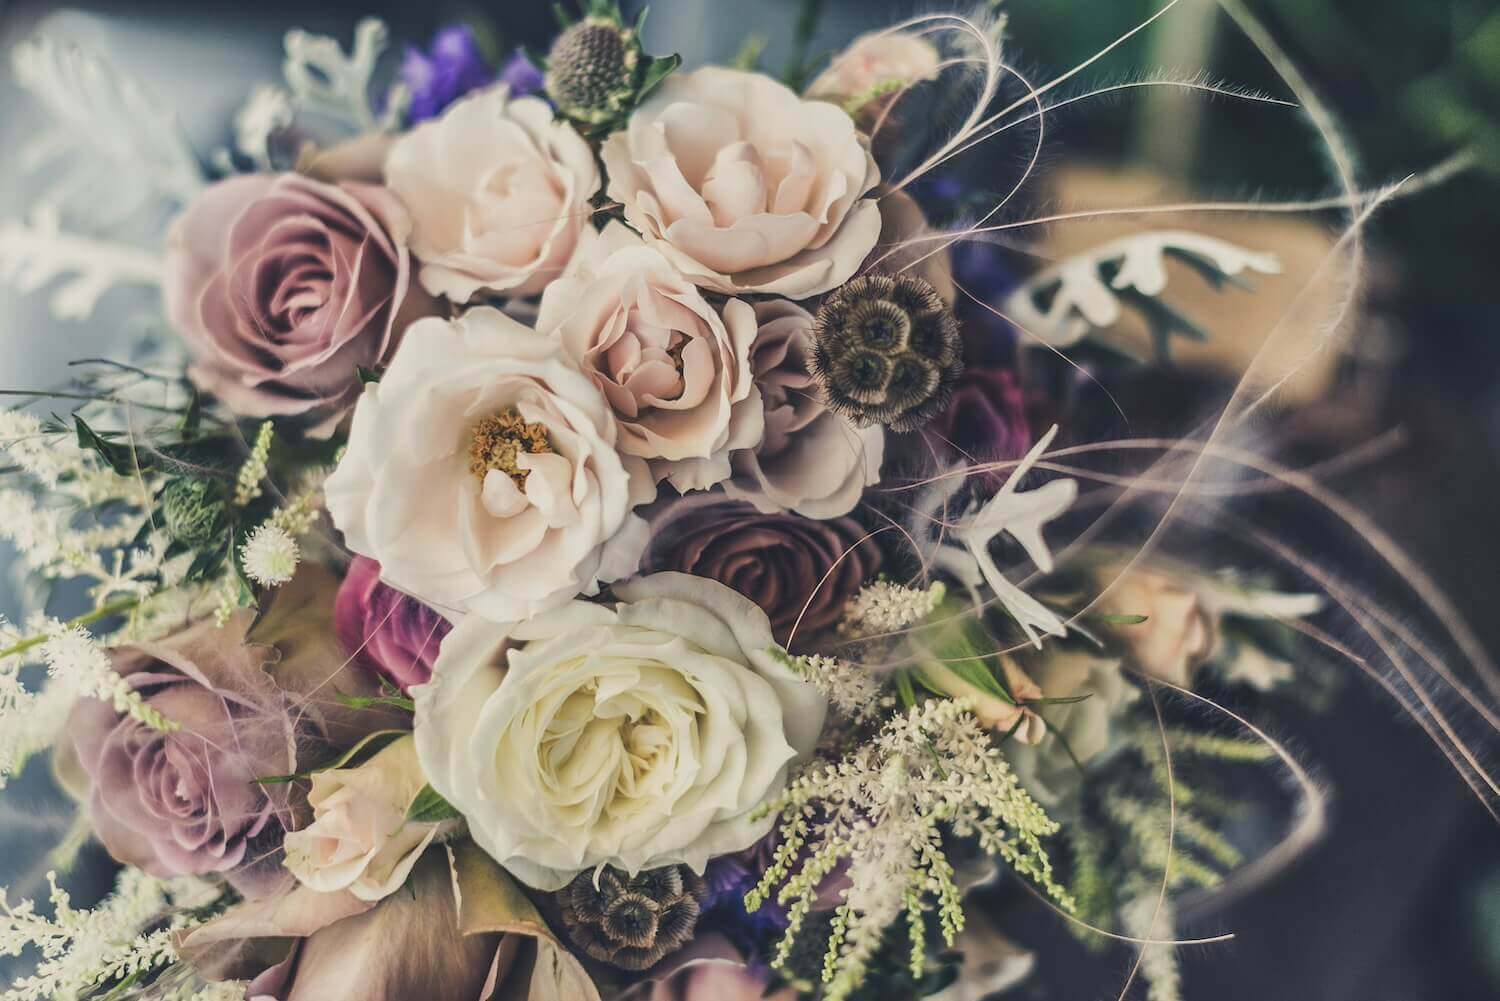 シックな色合いの花で作られた結婚式のブーケ